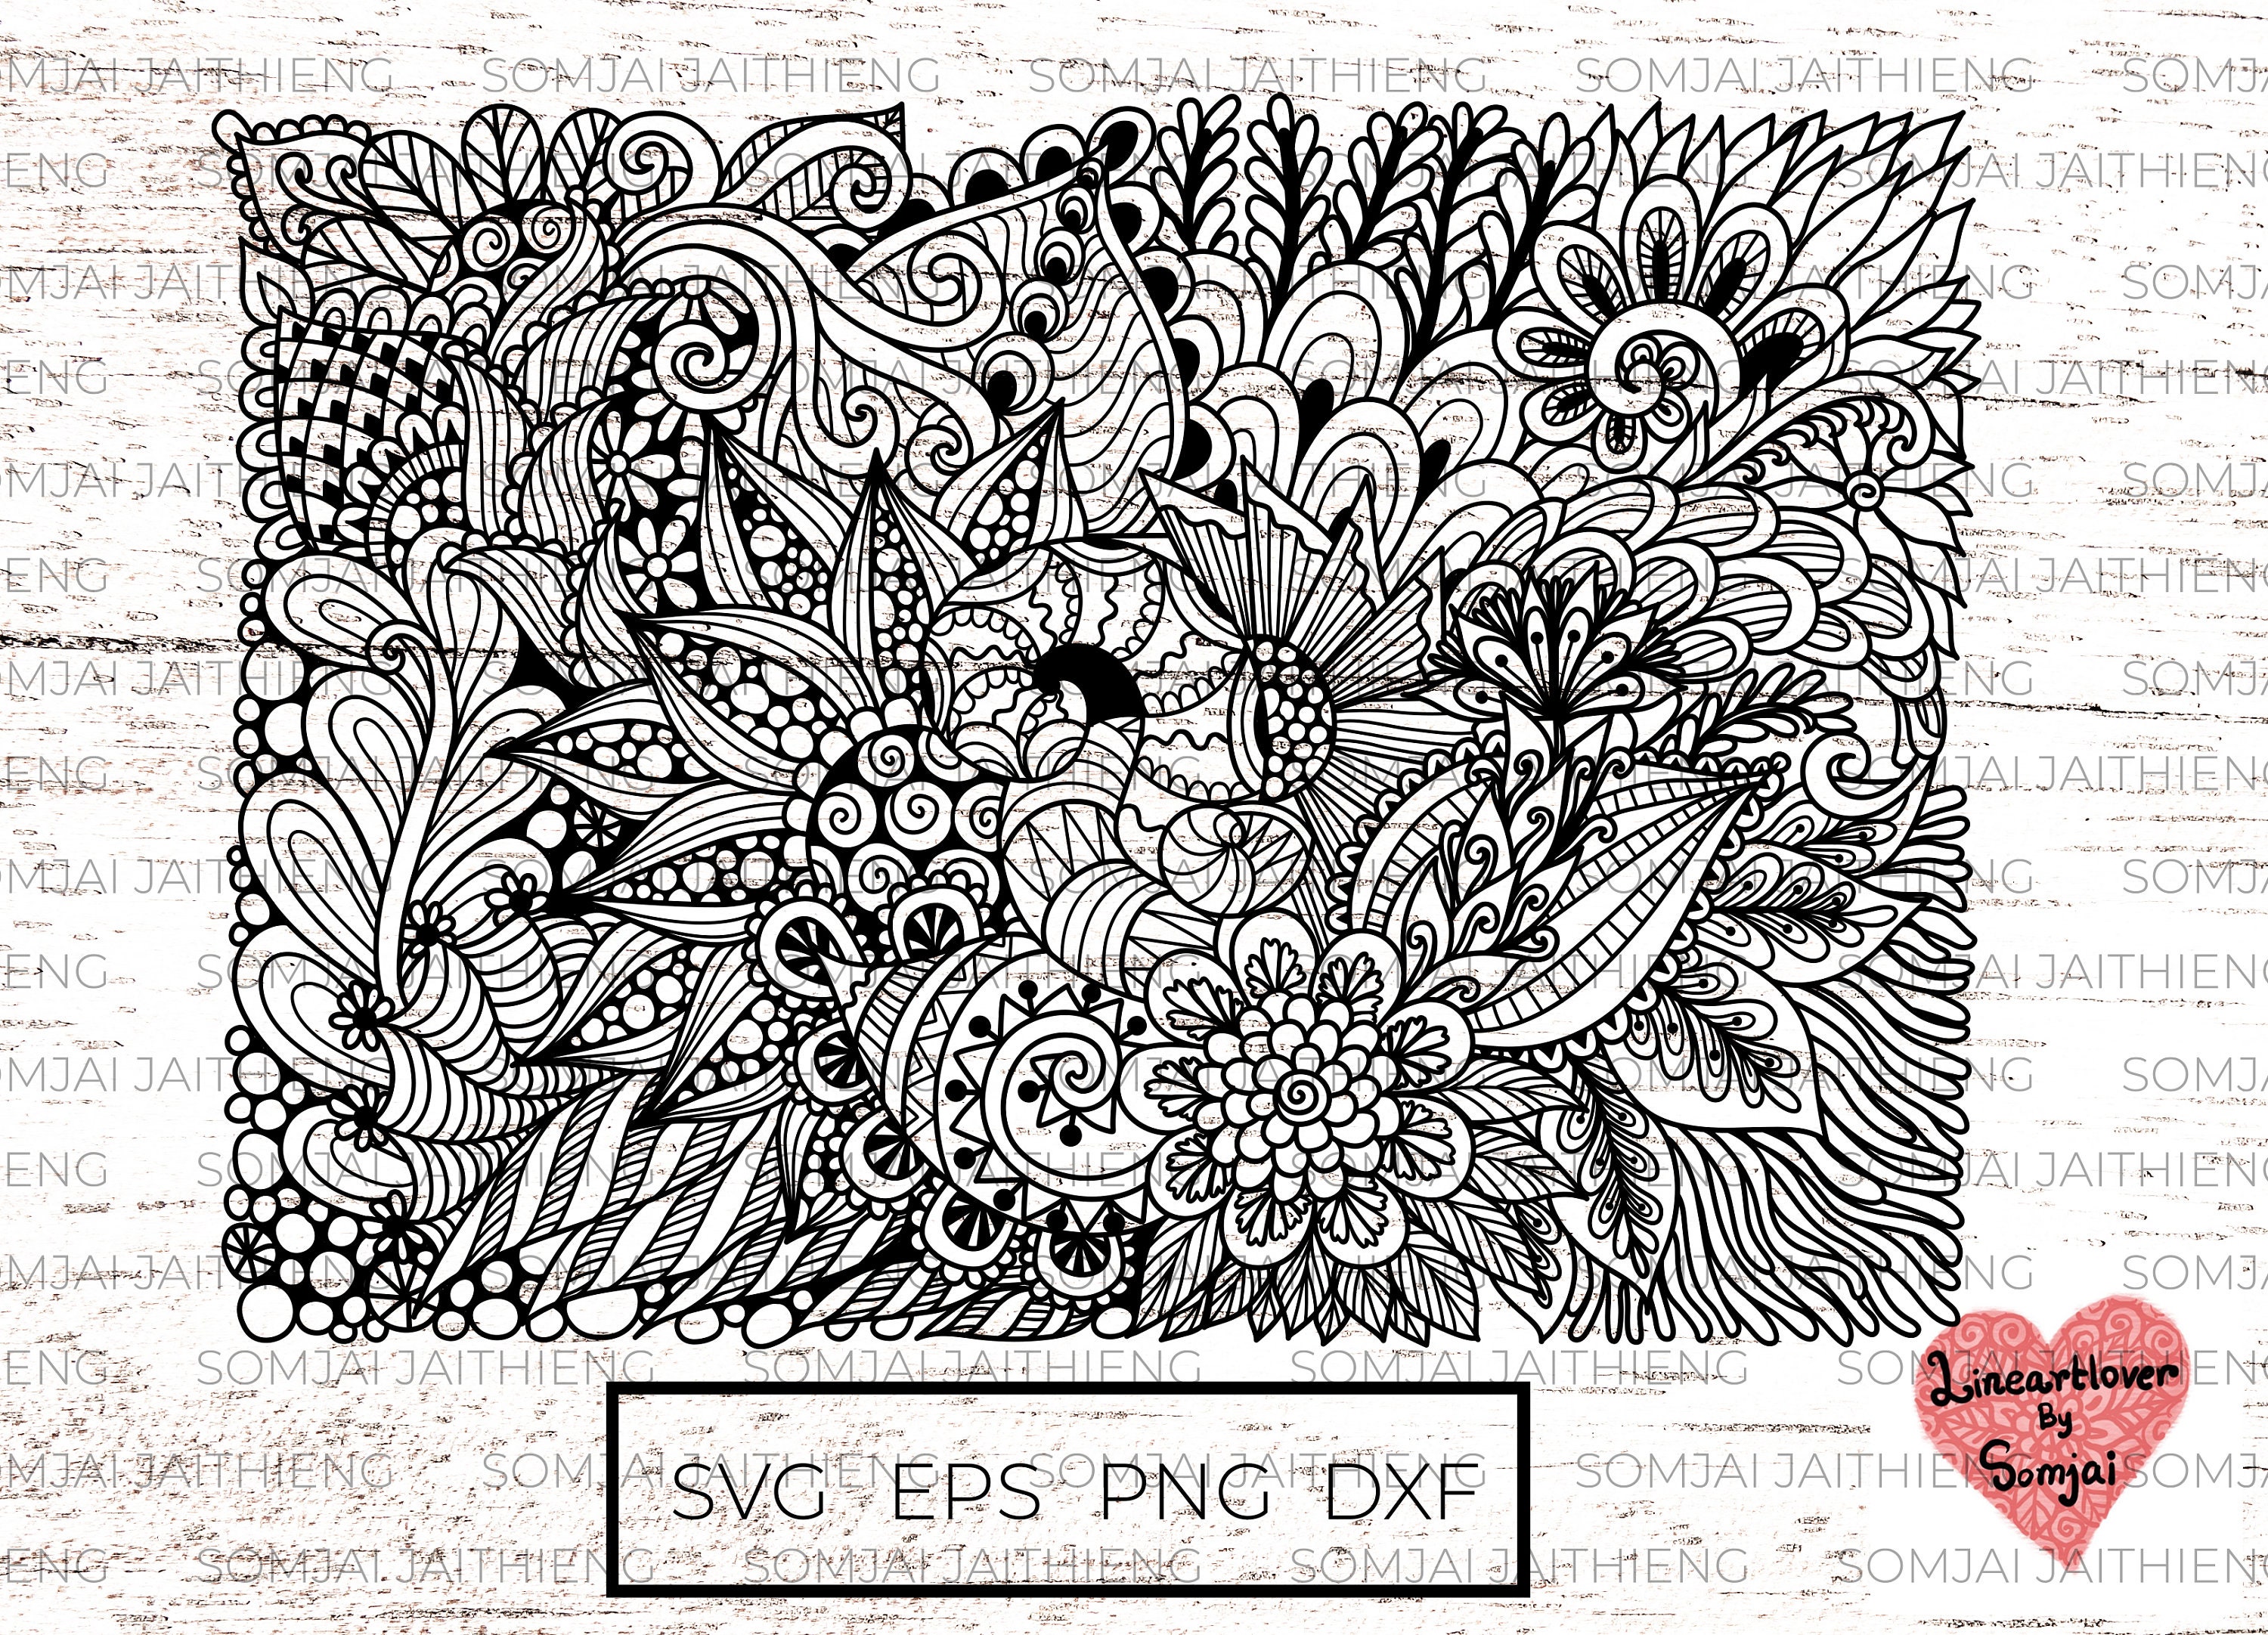 Cùng chiêm ngưỡng những họa tiết hoa trừu tượng SVG / Zentangle SVG / Mandala SVG tuyệt vời của chúng tôi. Chúng tôi hy vọng sản phẩm sẽ mang đến cho bạn những trải nghiệm thị giác tuyệt vời và giúp bạn tạo ra những thiết kế sáng tạo và độc đáo nhất.